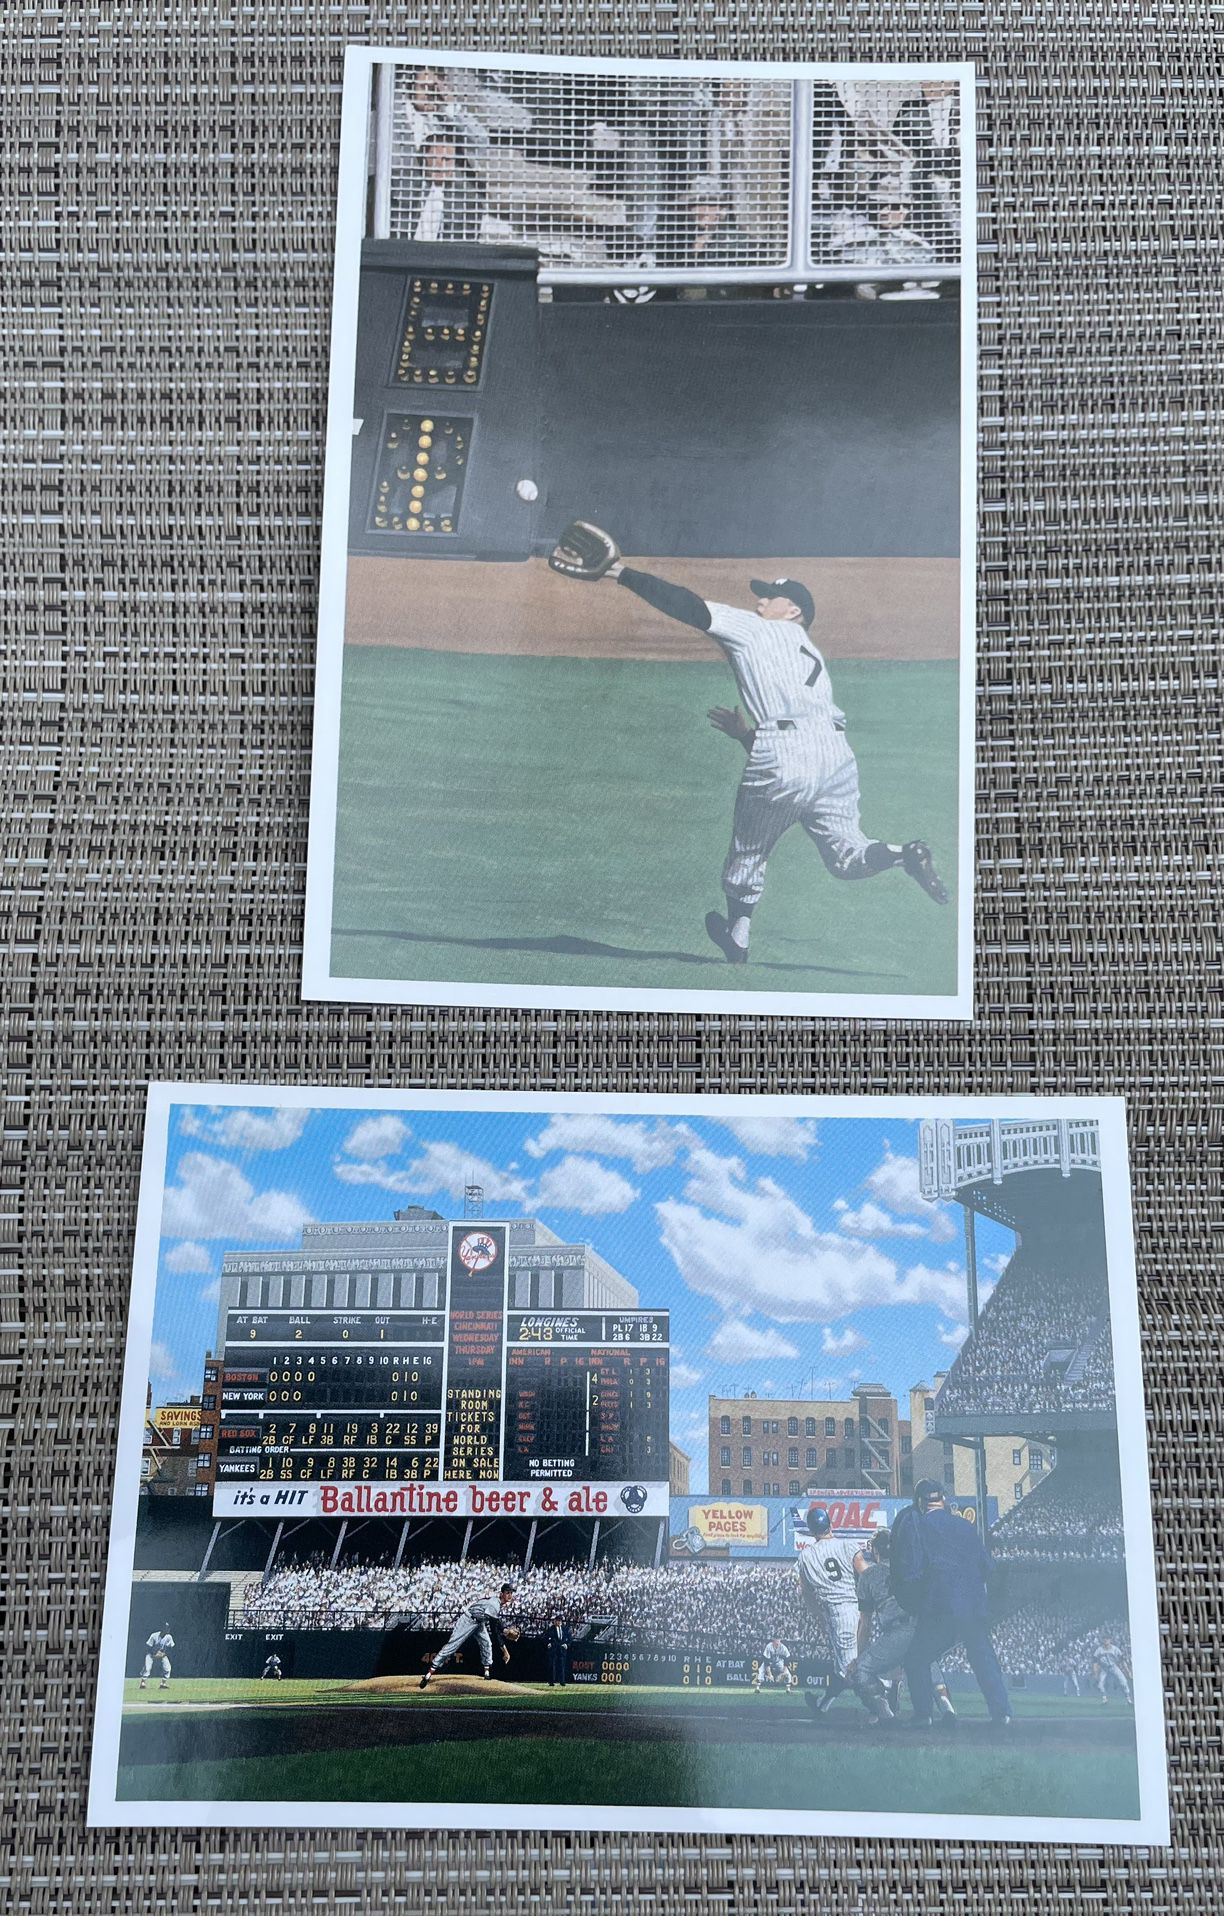 Yankees Mantle & Maris postcards